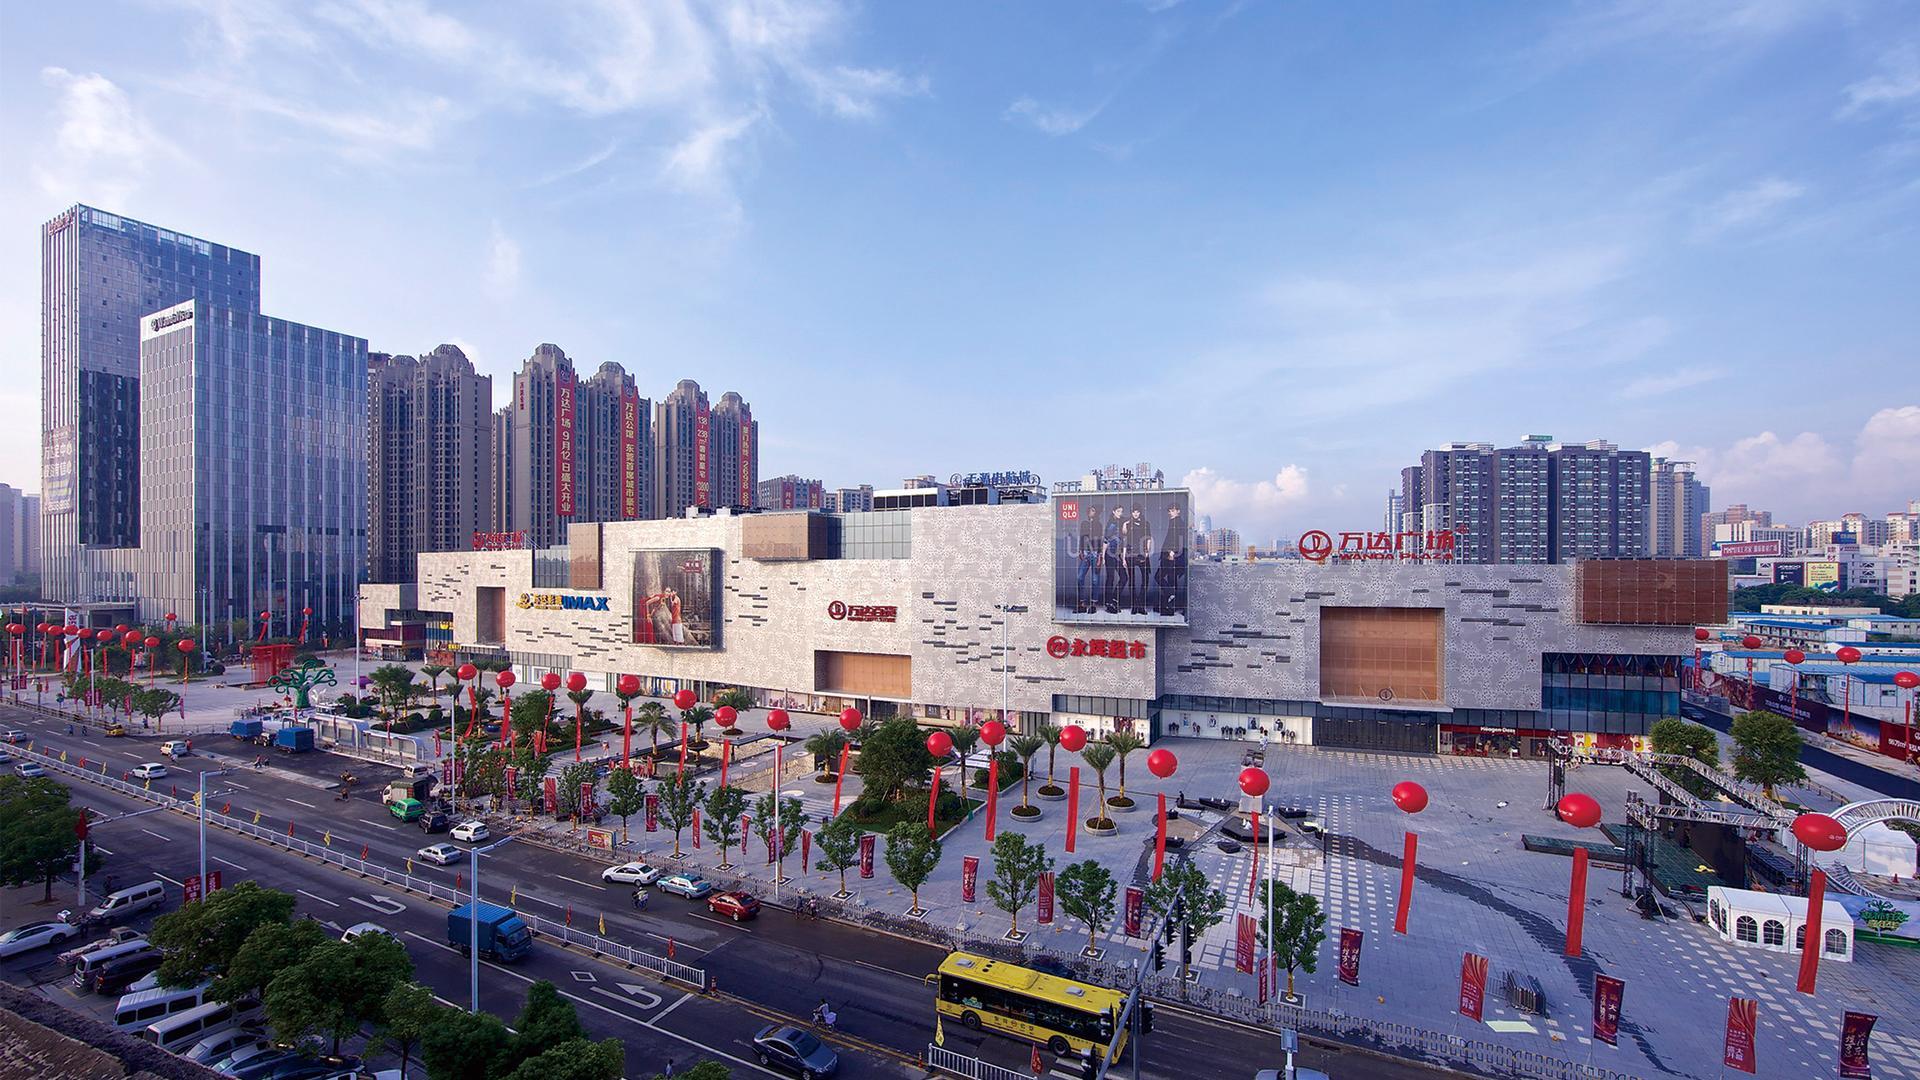 Dongguan Wanda Plaza